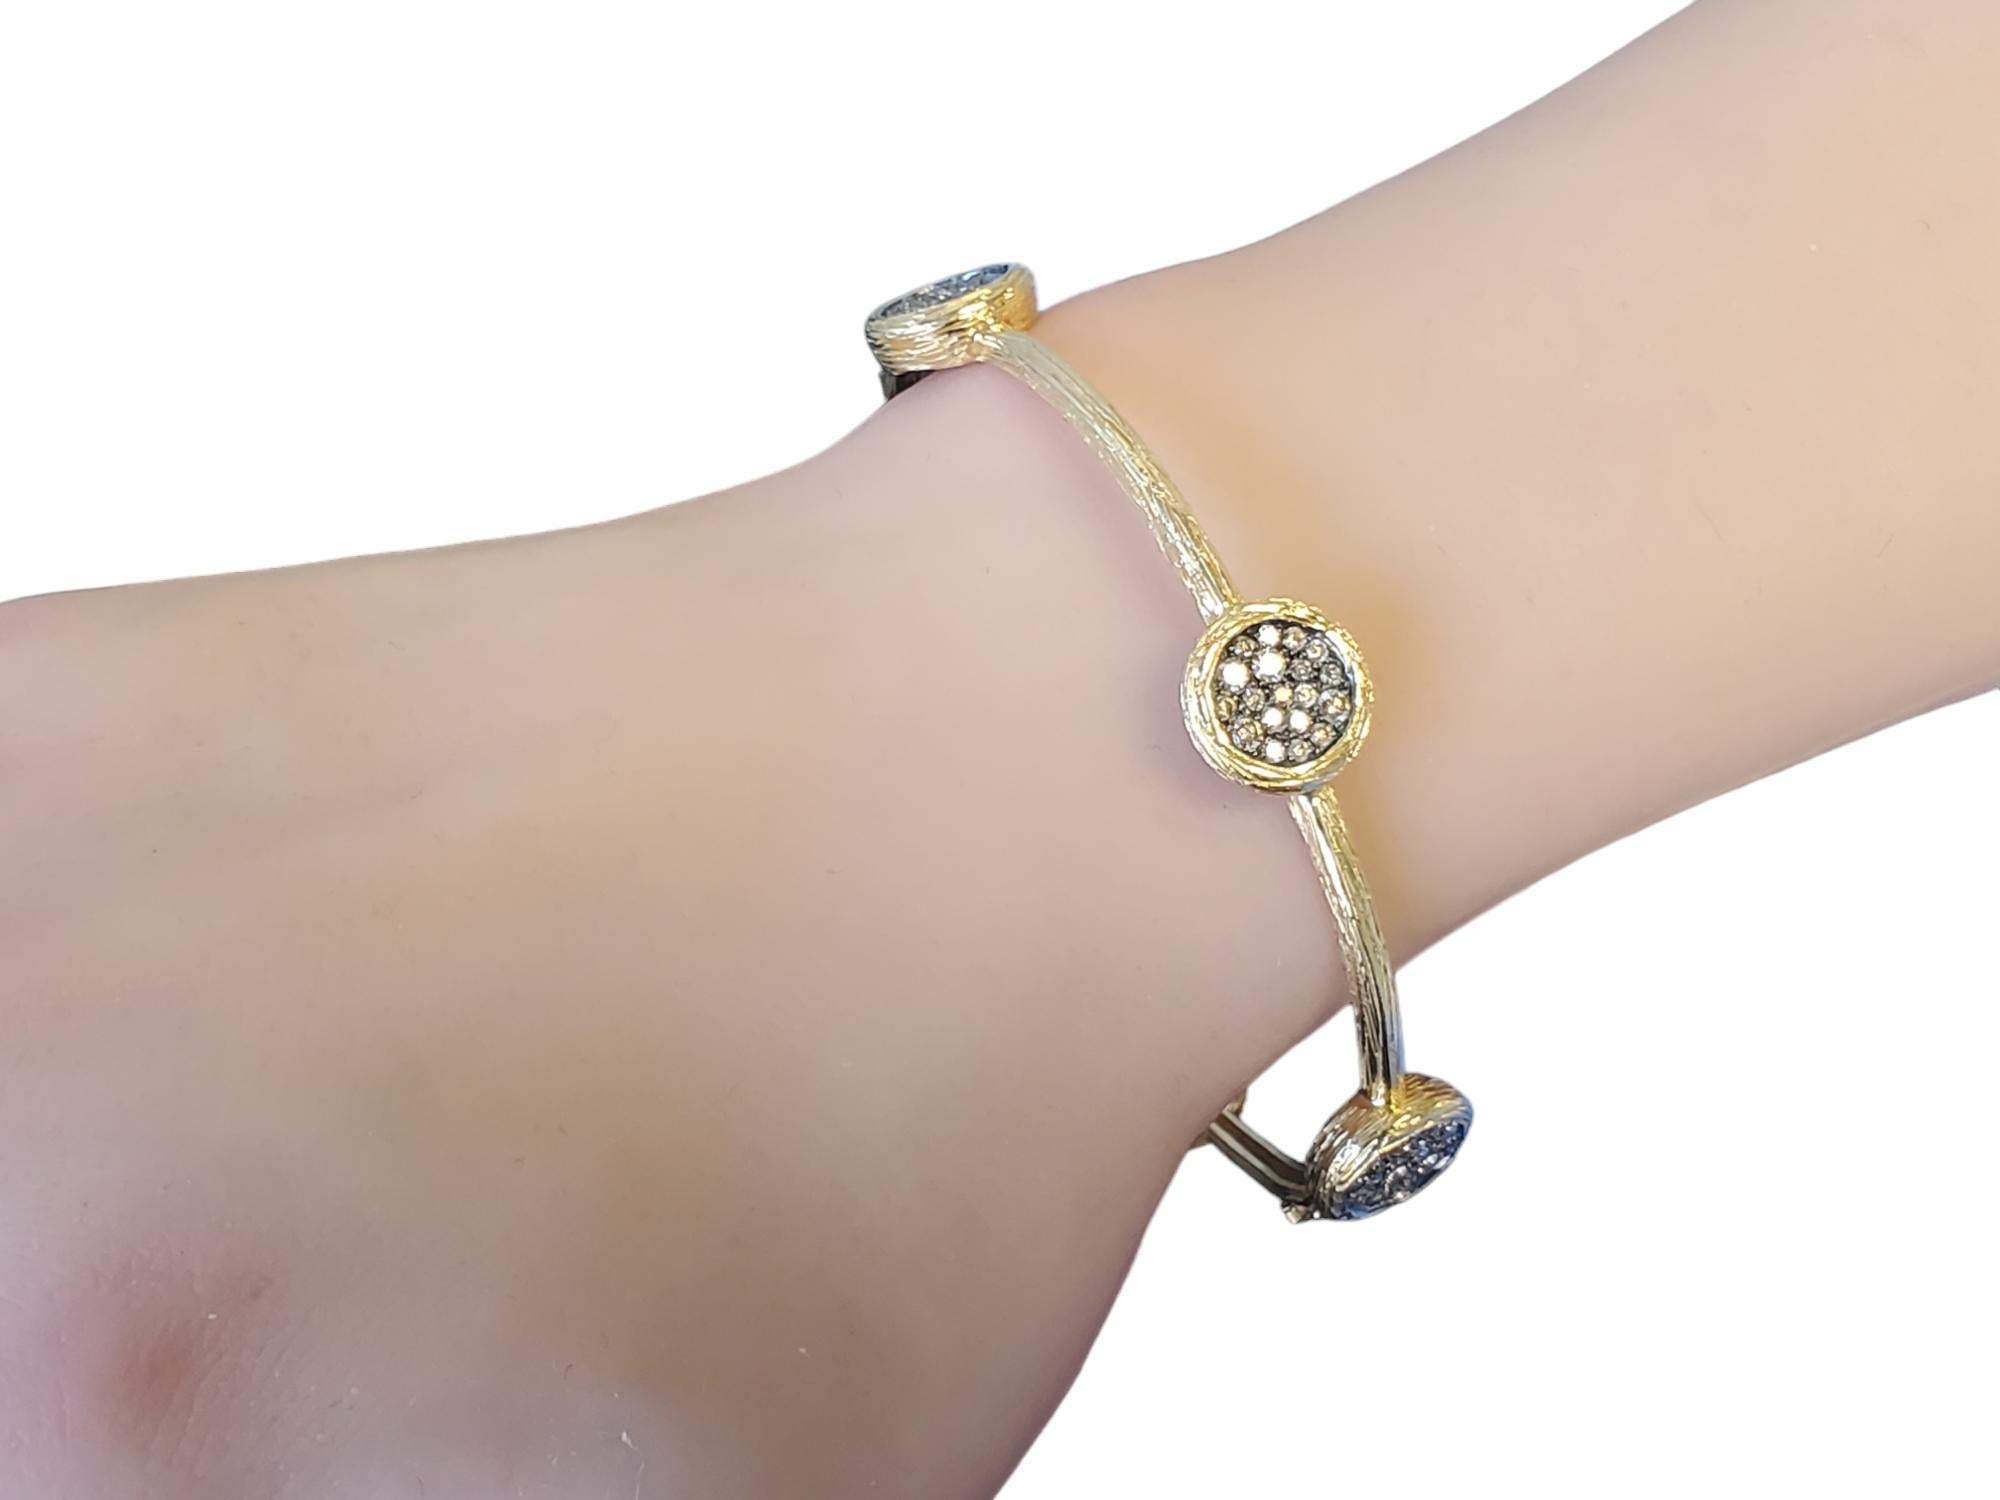 Ce bracelet en or jaune 14k est orné de beaux diamants de couleur chocolat. Ce bracelet de créateur présente une finition du métal vraiment agréable et unique, la qualité de l'exécution est remarquable. Il est orné de diamants ronds et brillants de